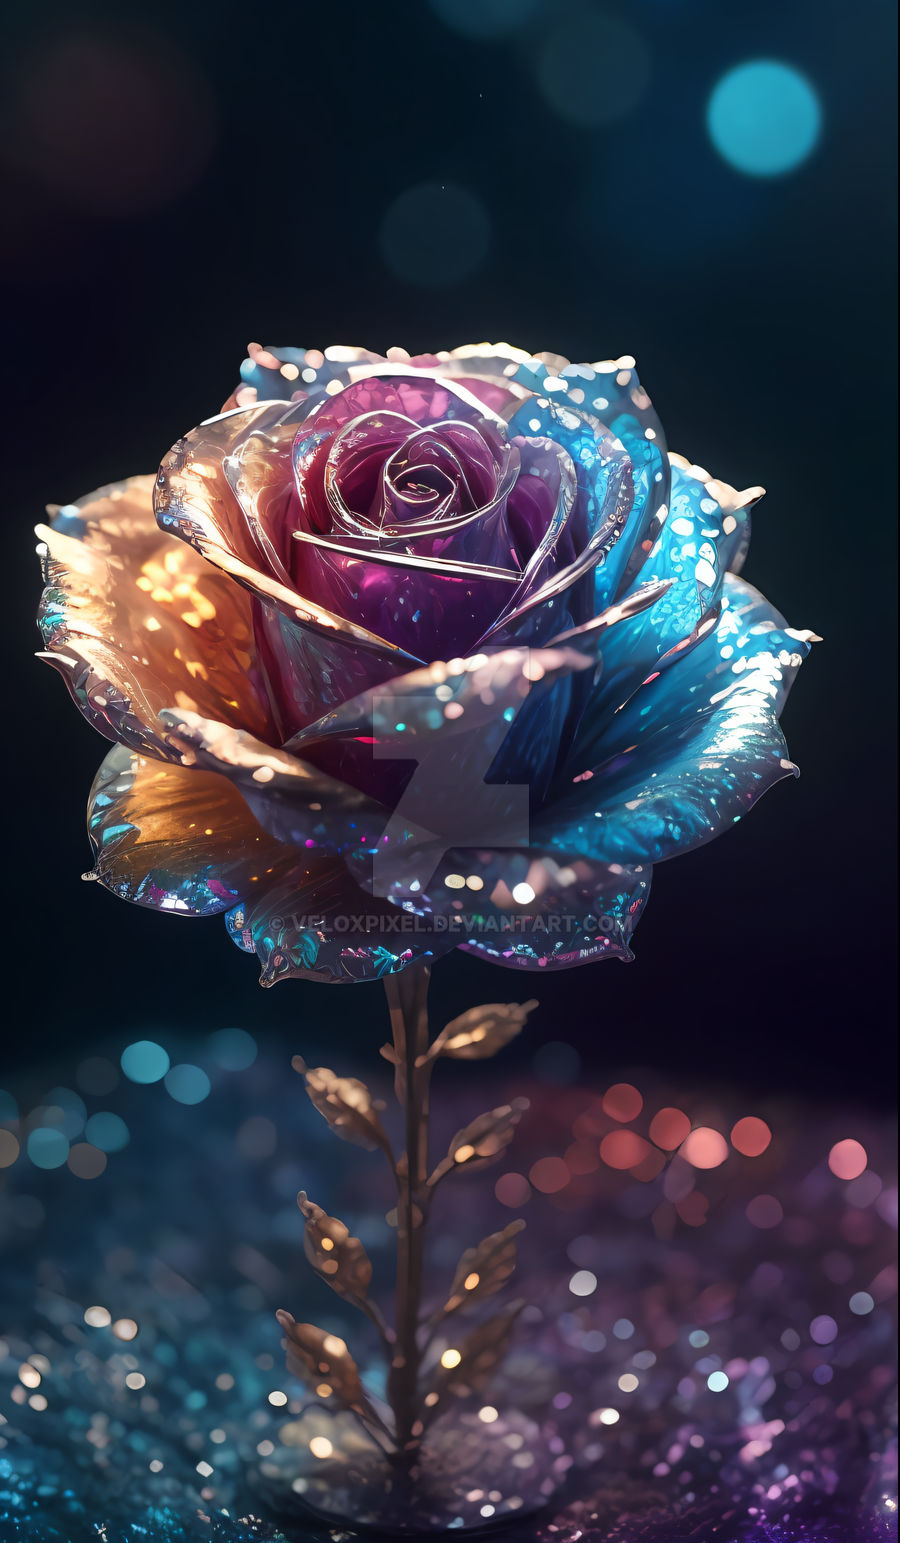 Beautiful Rose Flower By Veloxpixel On